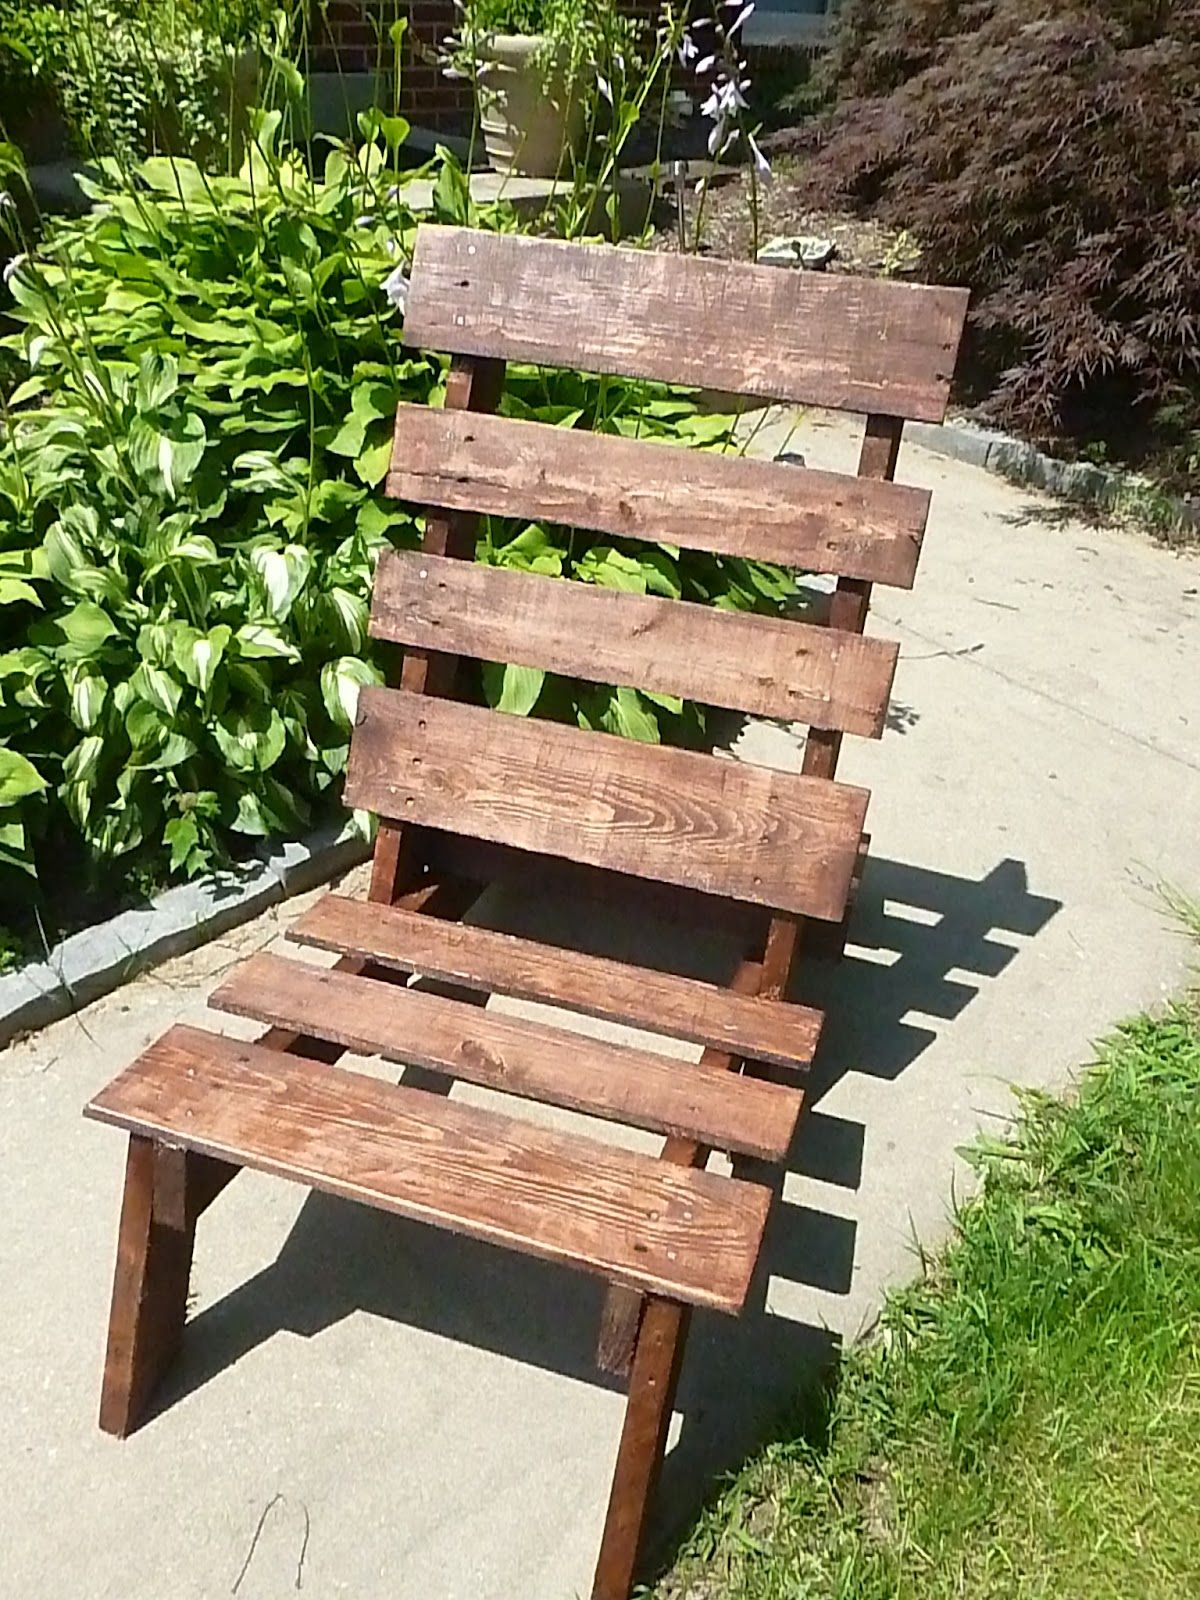 Дешево и красиво: делаем стулья своими руками - image8